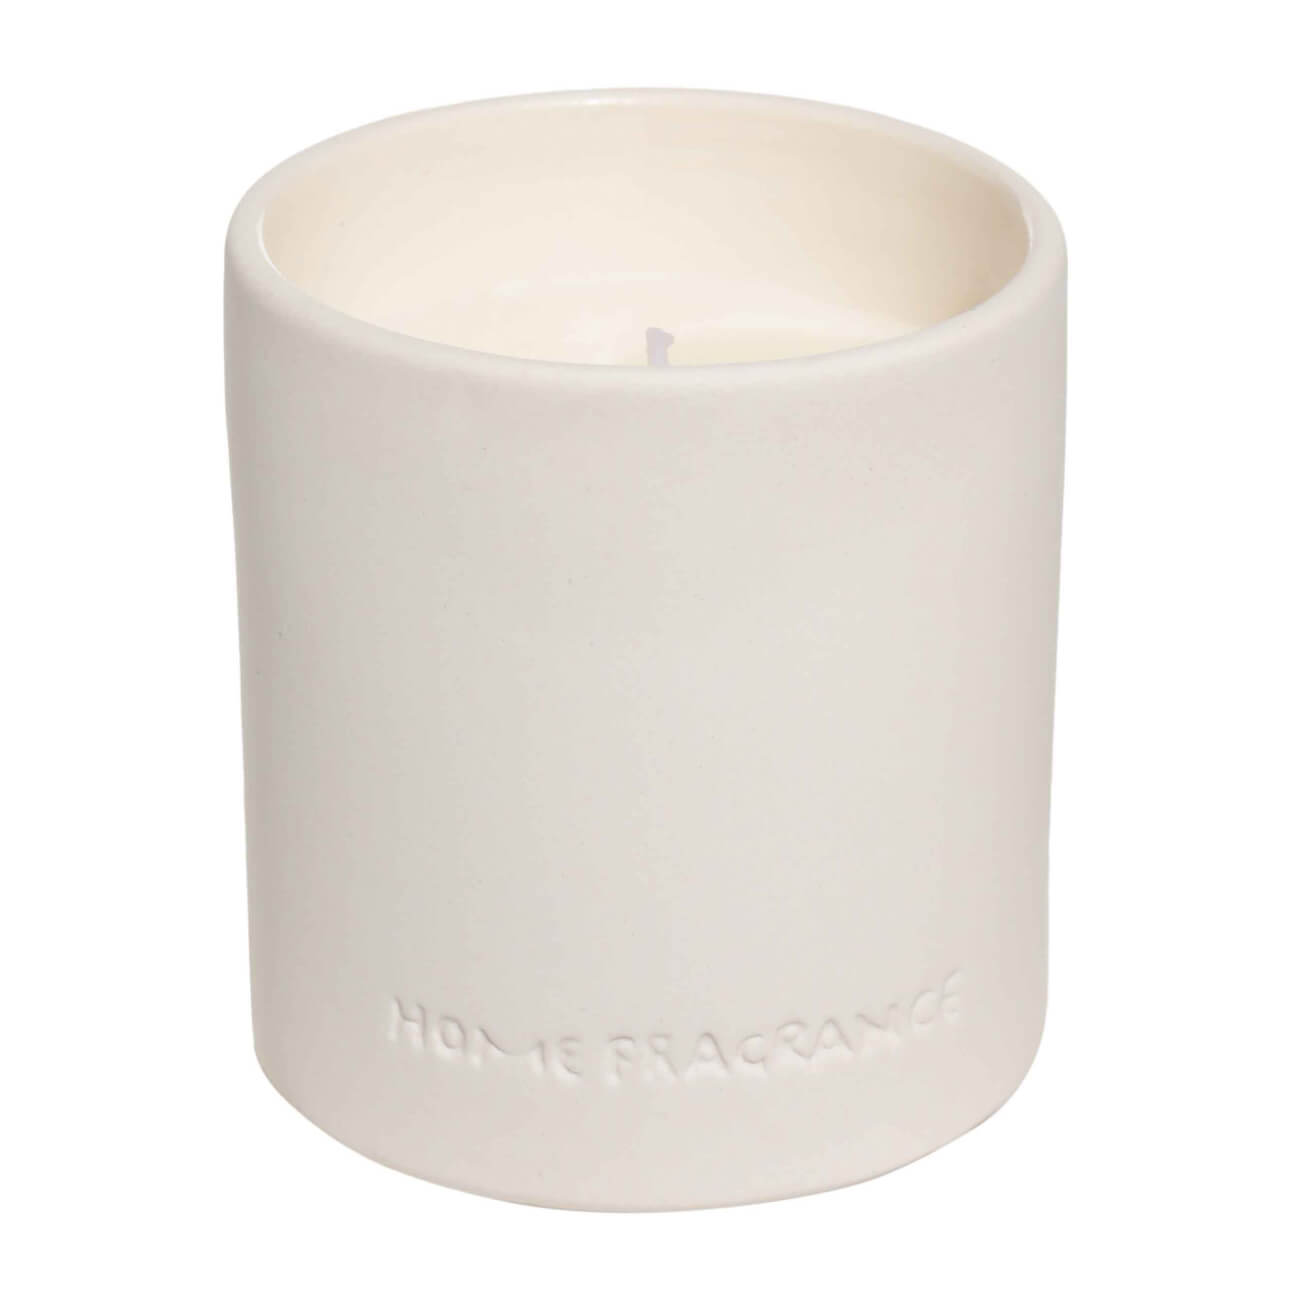 Свеча ароматическая, 9 см, в подсвечнике, керамика, белая, Neroli portofino, B&W свеча ароматизированная в подсвечнике жасмин белая 8 3 см